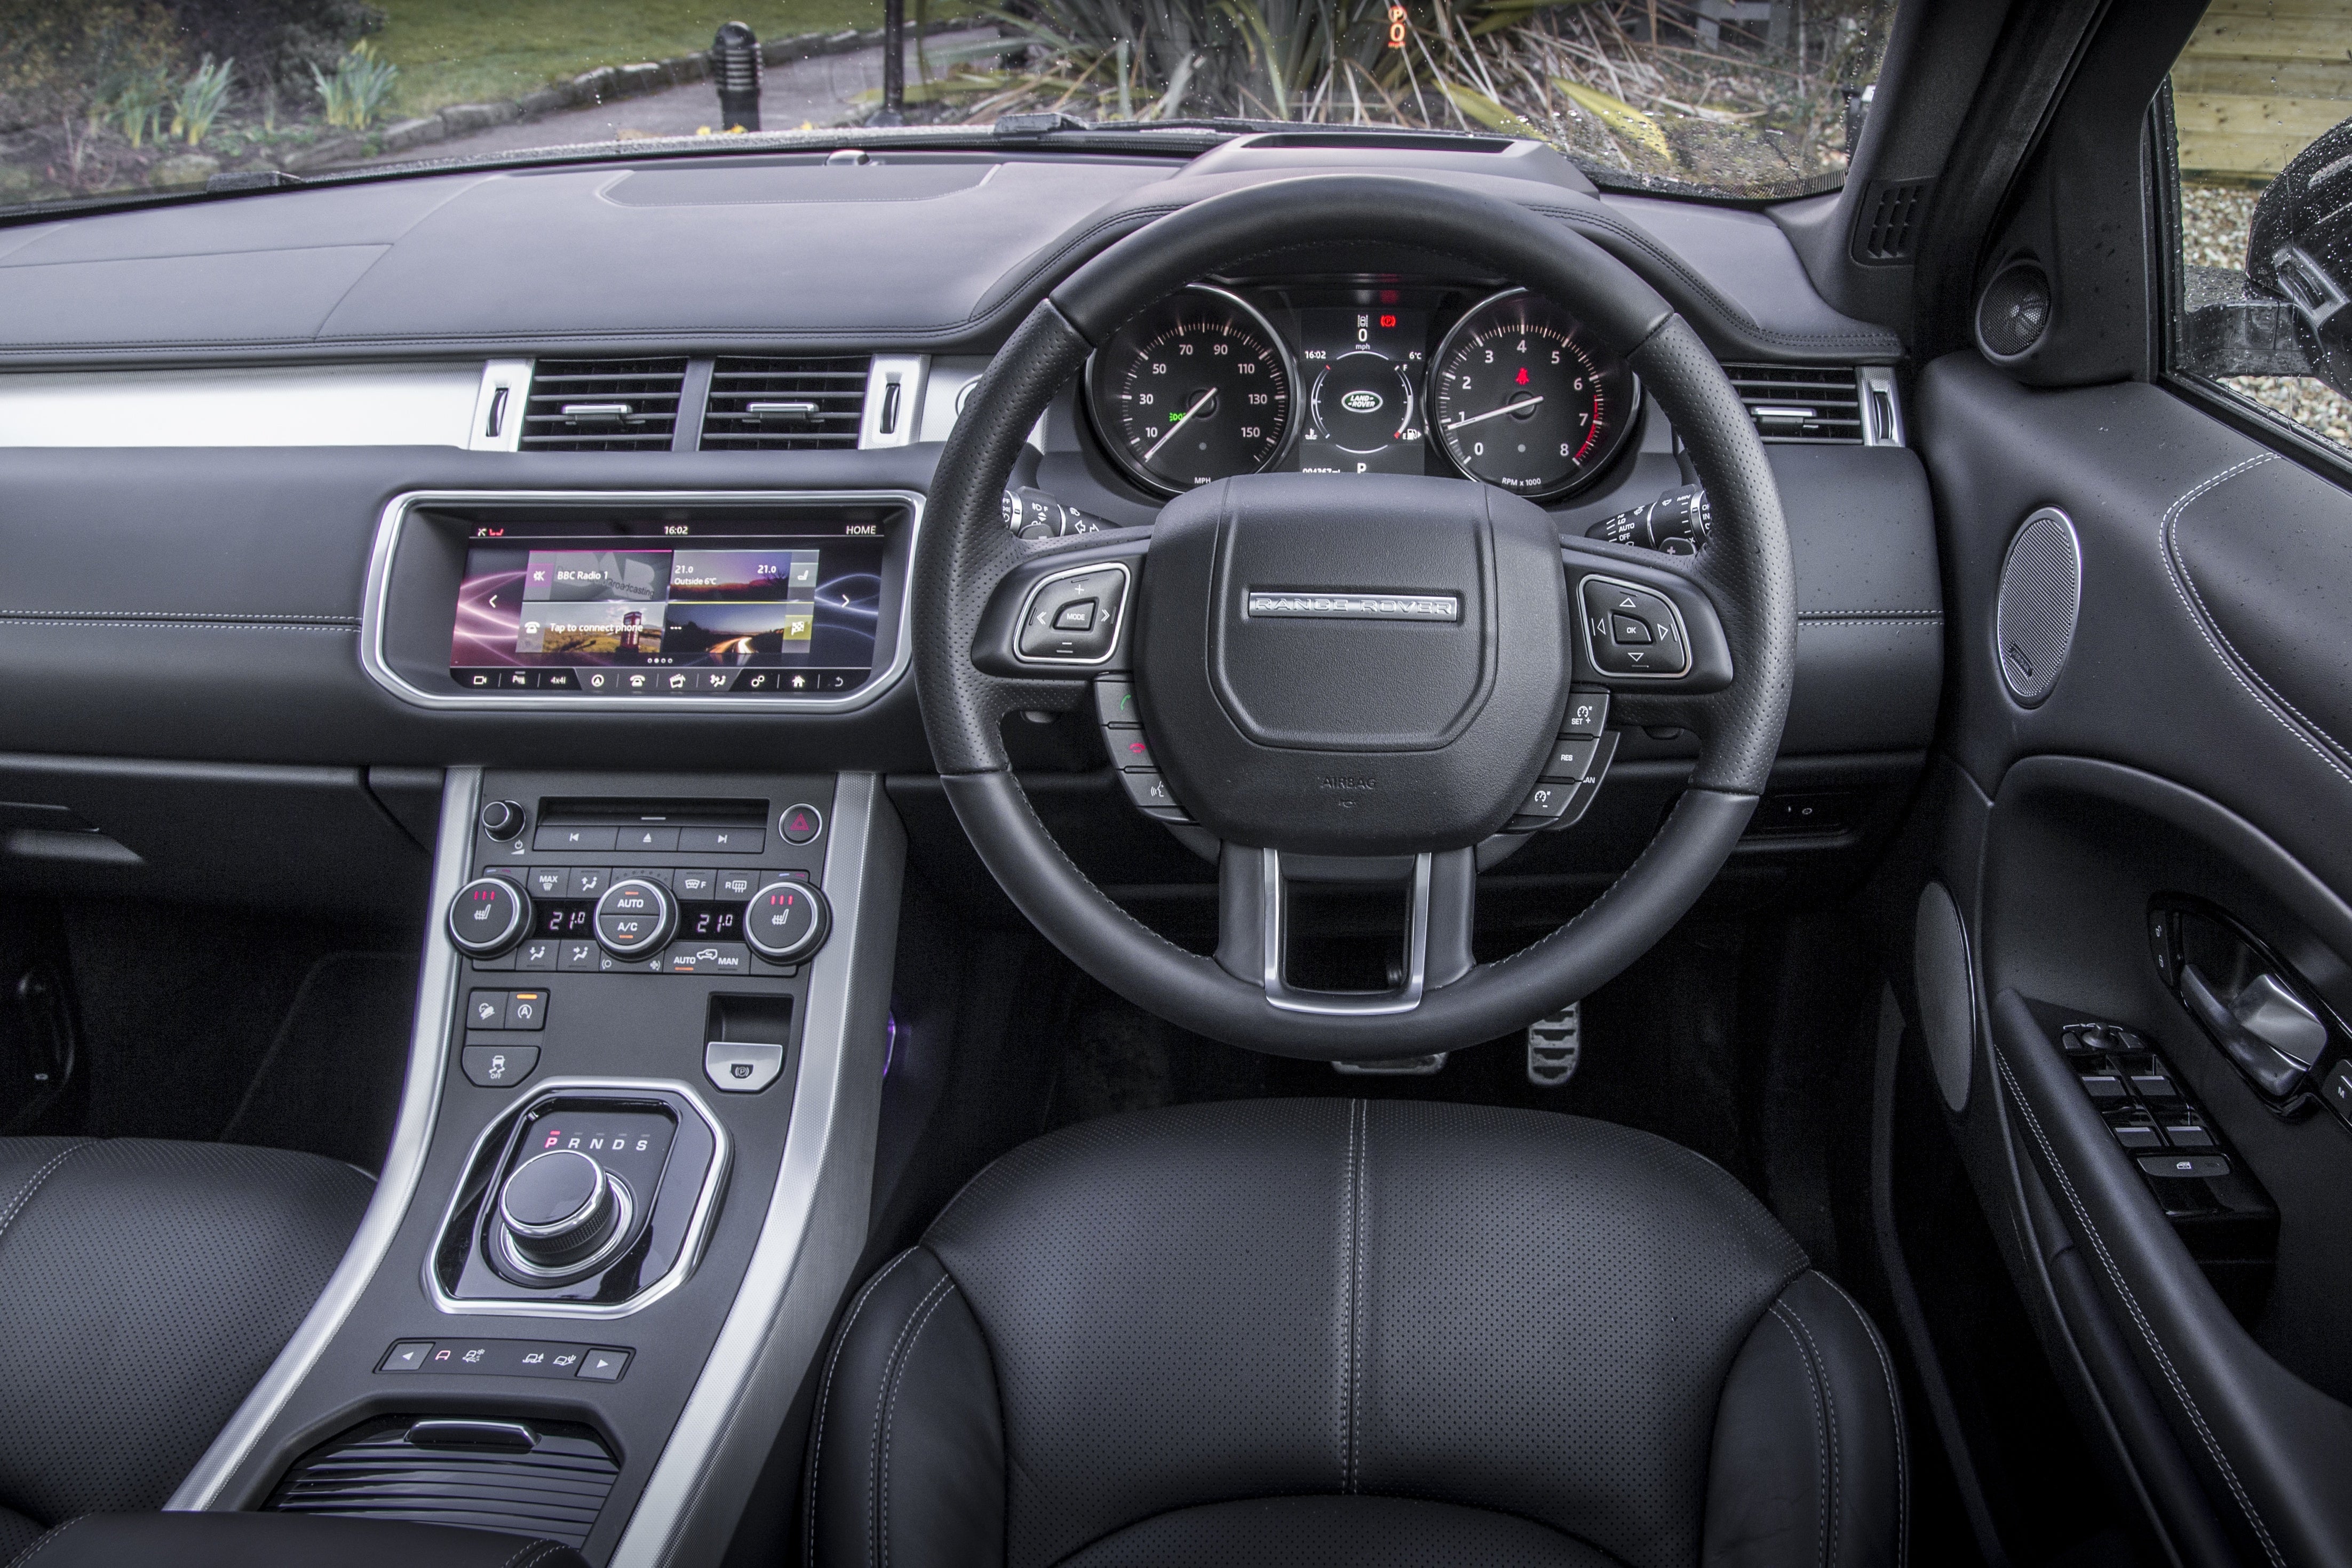 2019 Land Rover Range Rover Evoque 133 Interior Photos  US News